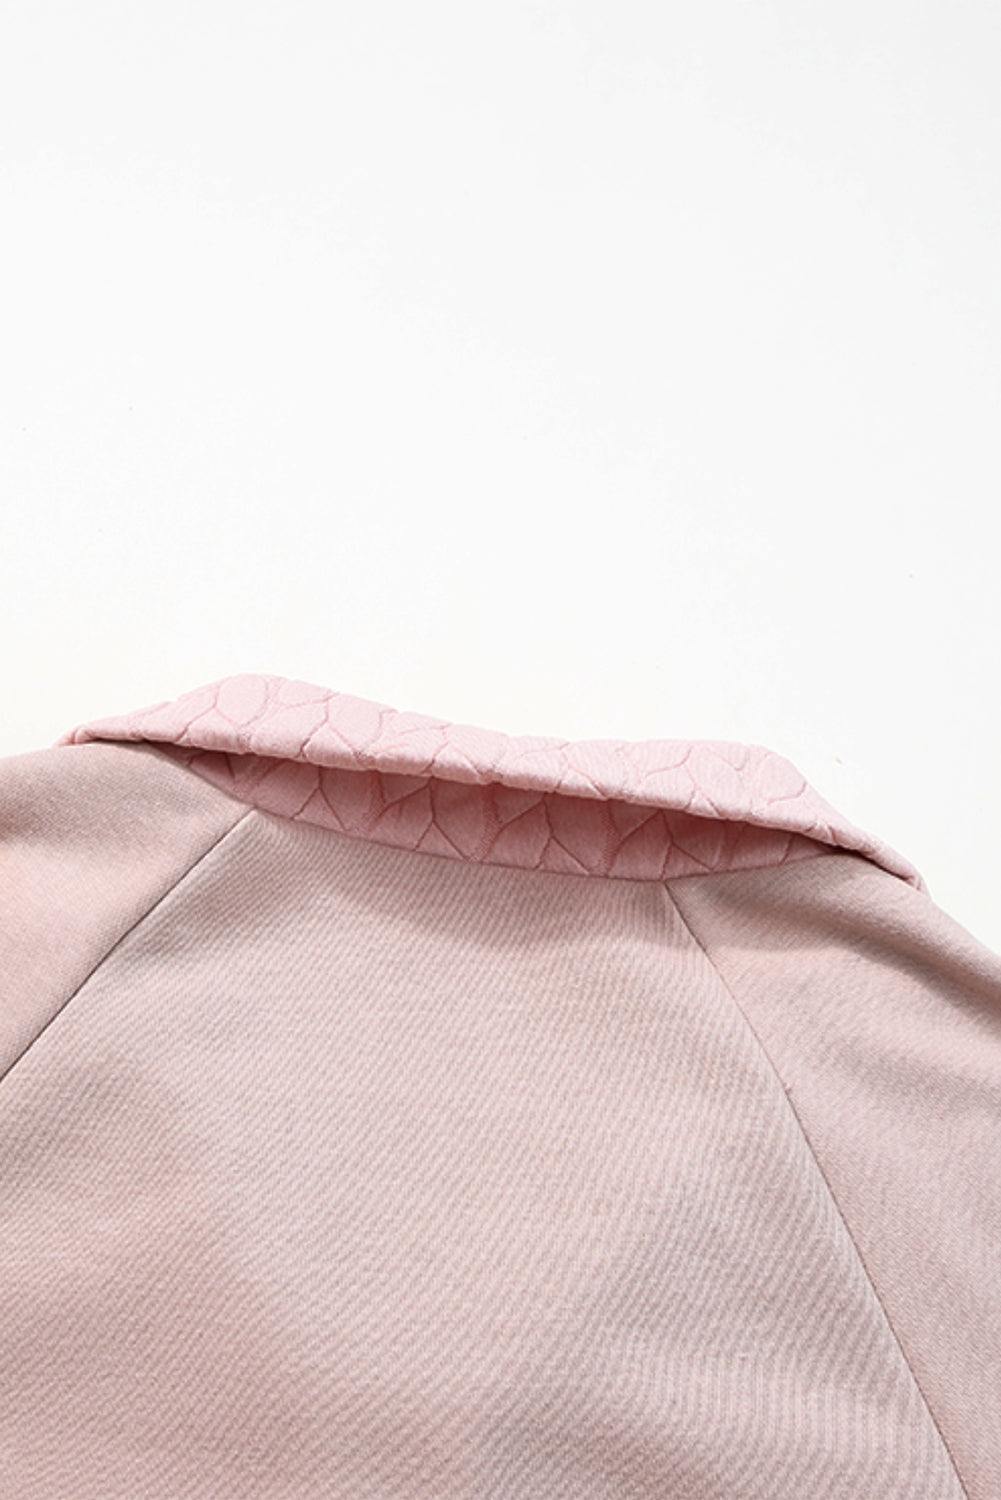 Hellkastanienfarbenes, strukturiertes Sweatshirt mit Raglanärmeln und Viertelreißverschluss